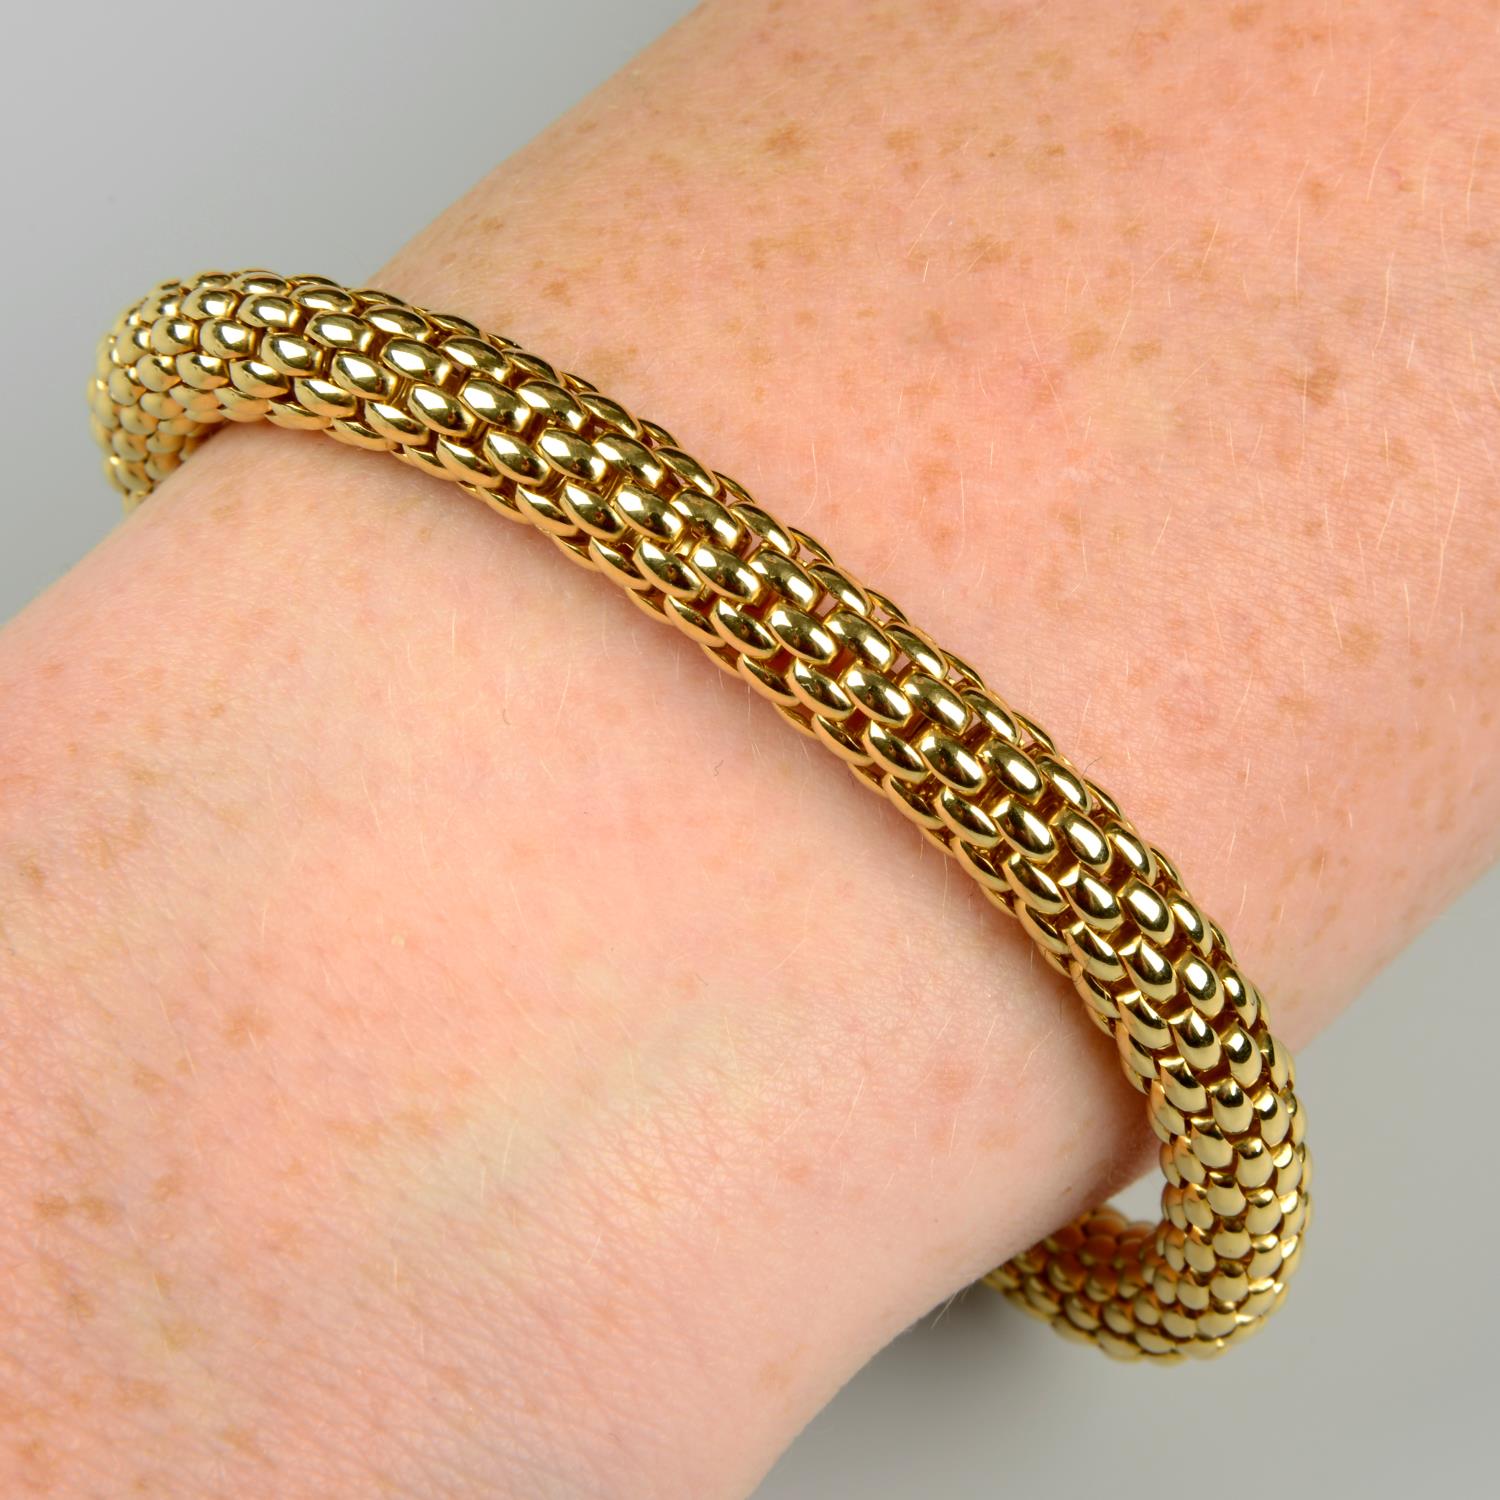 An 18ct gold 'Flex'it' bracelet, by Fope.